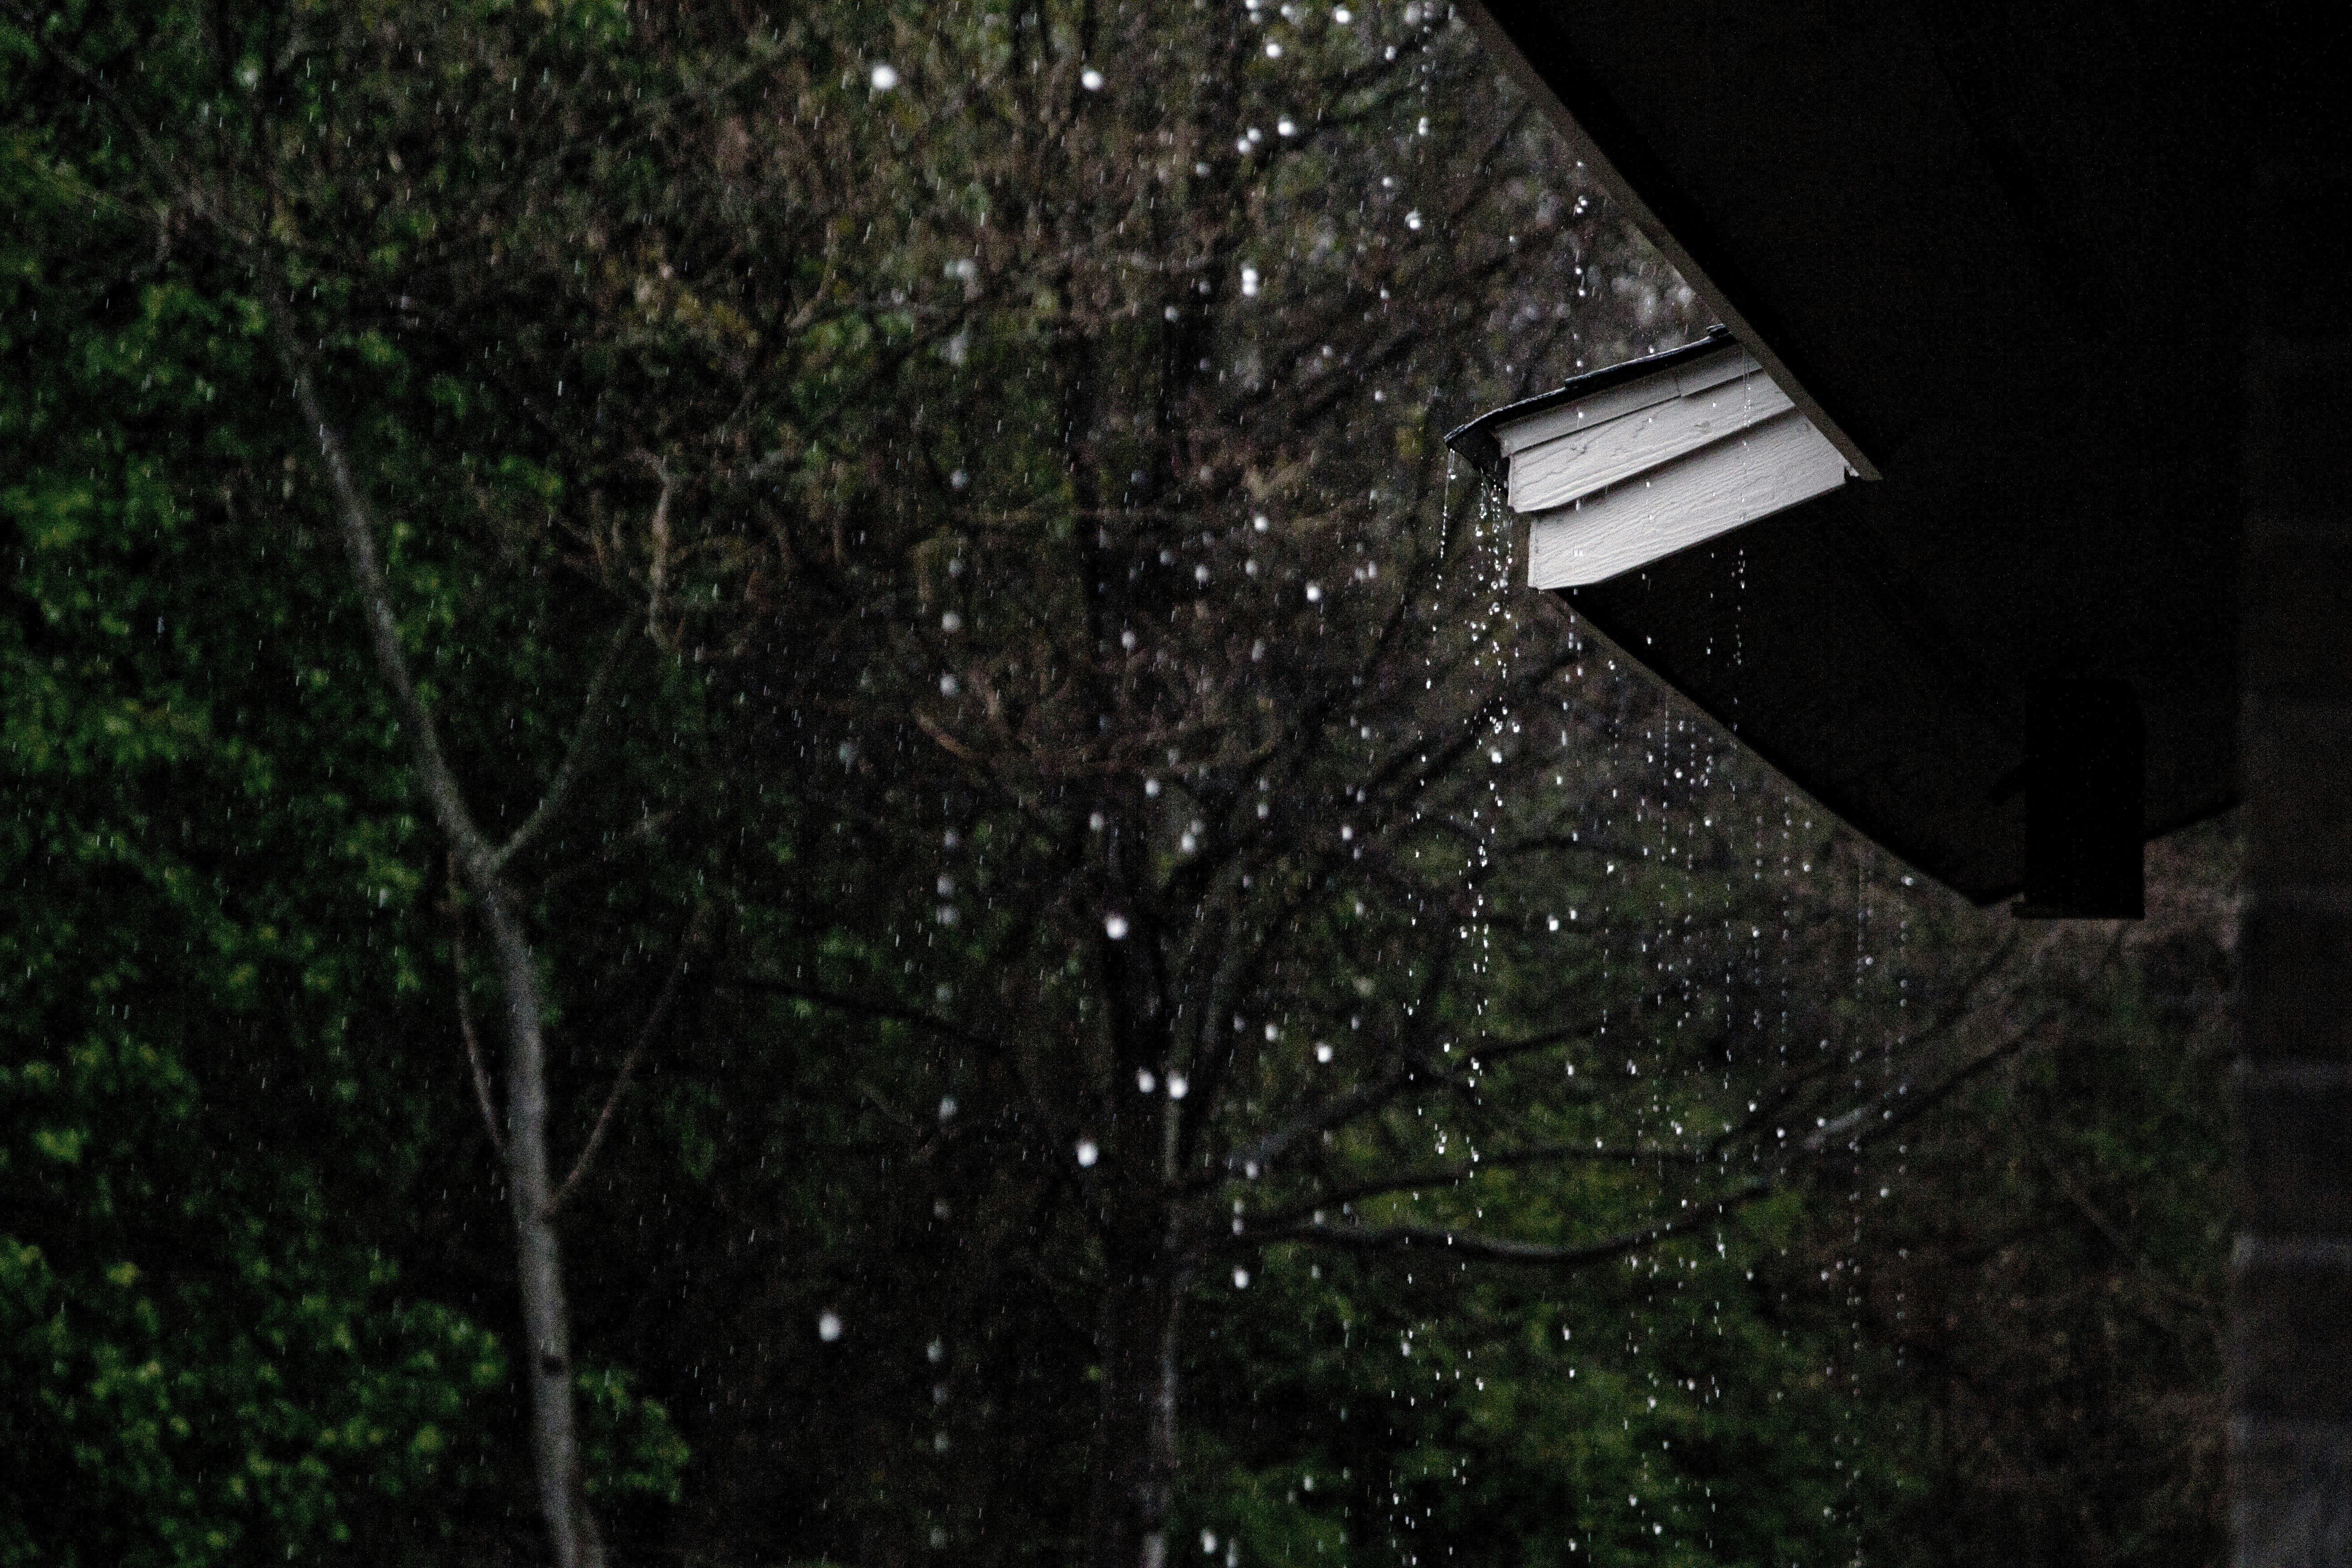 rain falling on roof